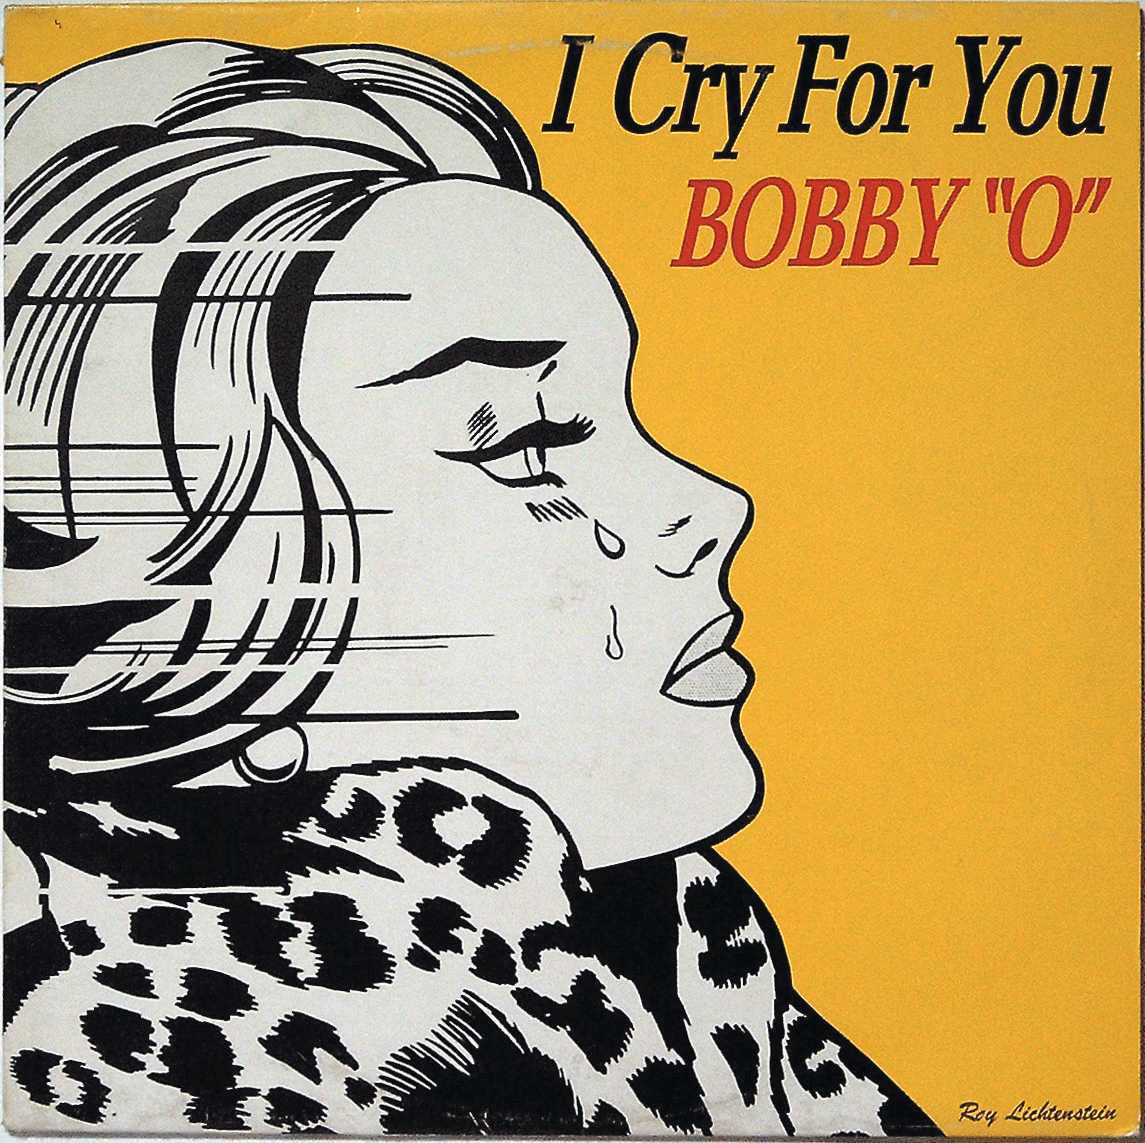 Una de las portadas que tuvo este single del venerado productor de música disco Bobby Orlando.